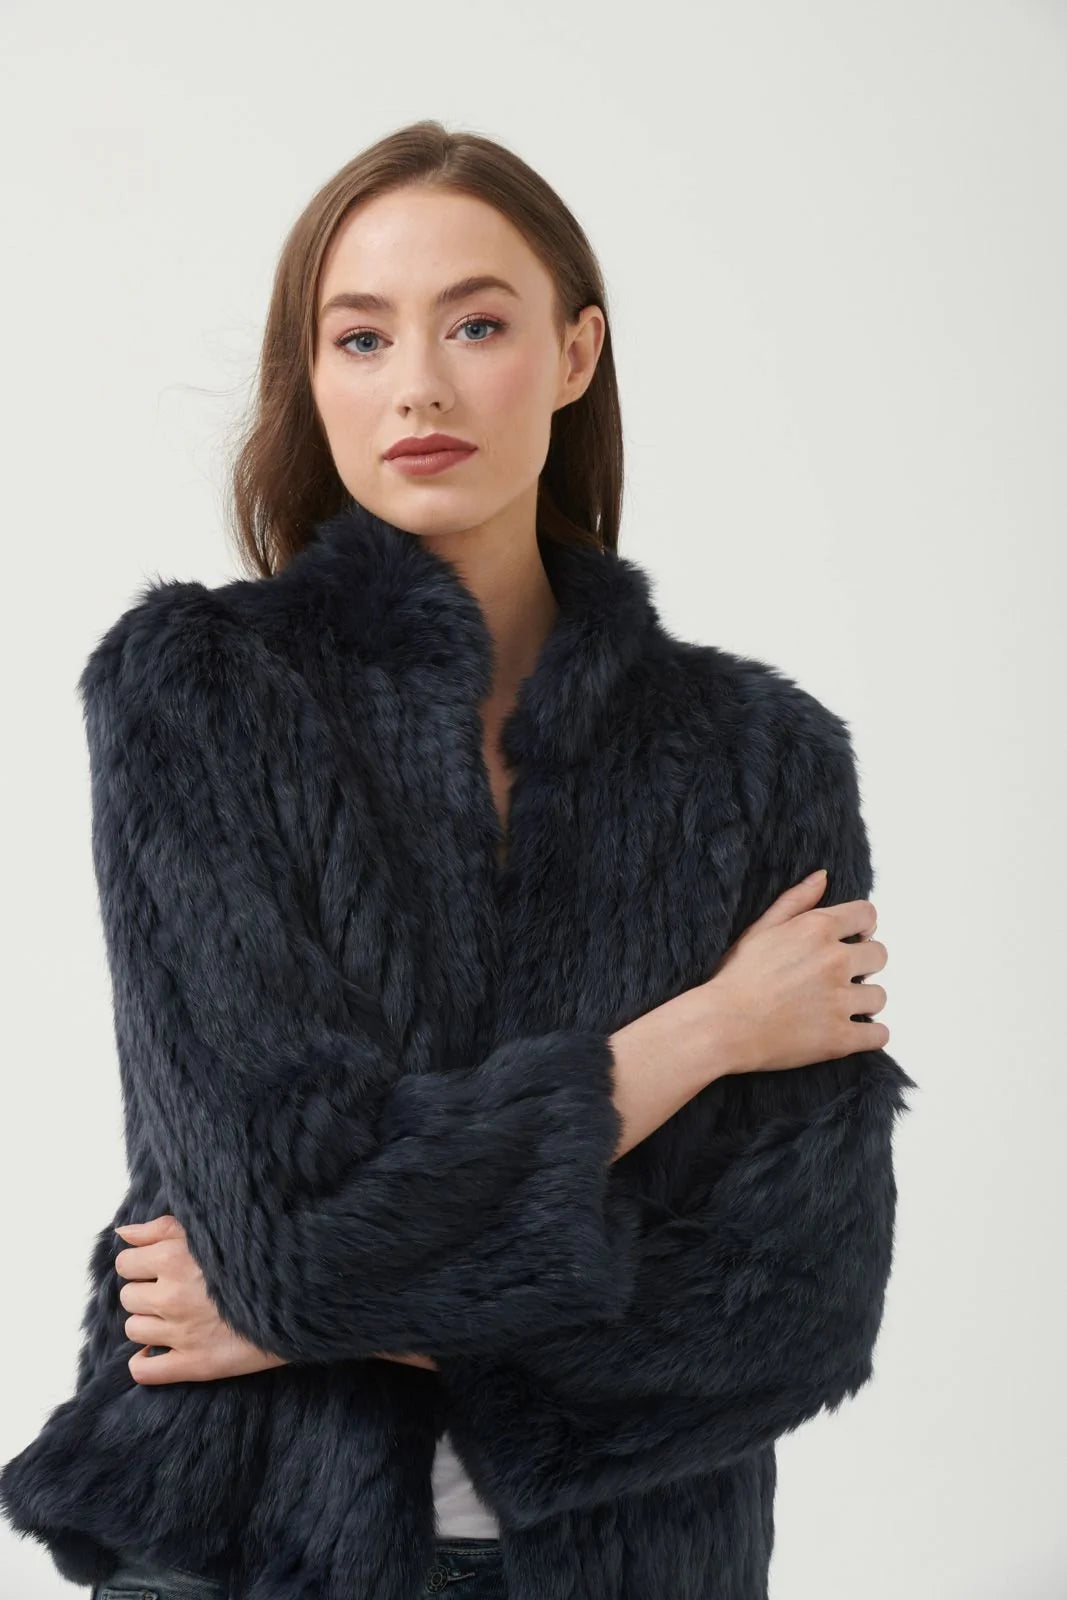 High Neck Fur Jacket - black Fur Coat 365 days   